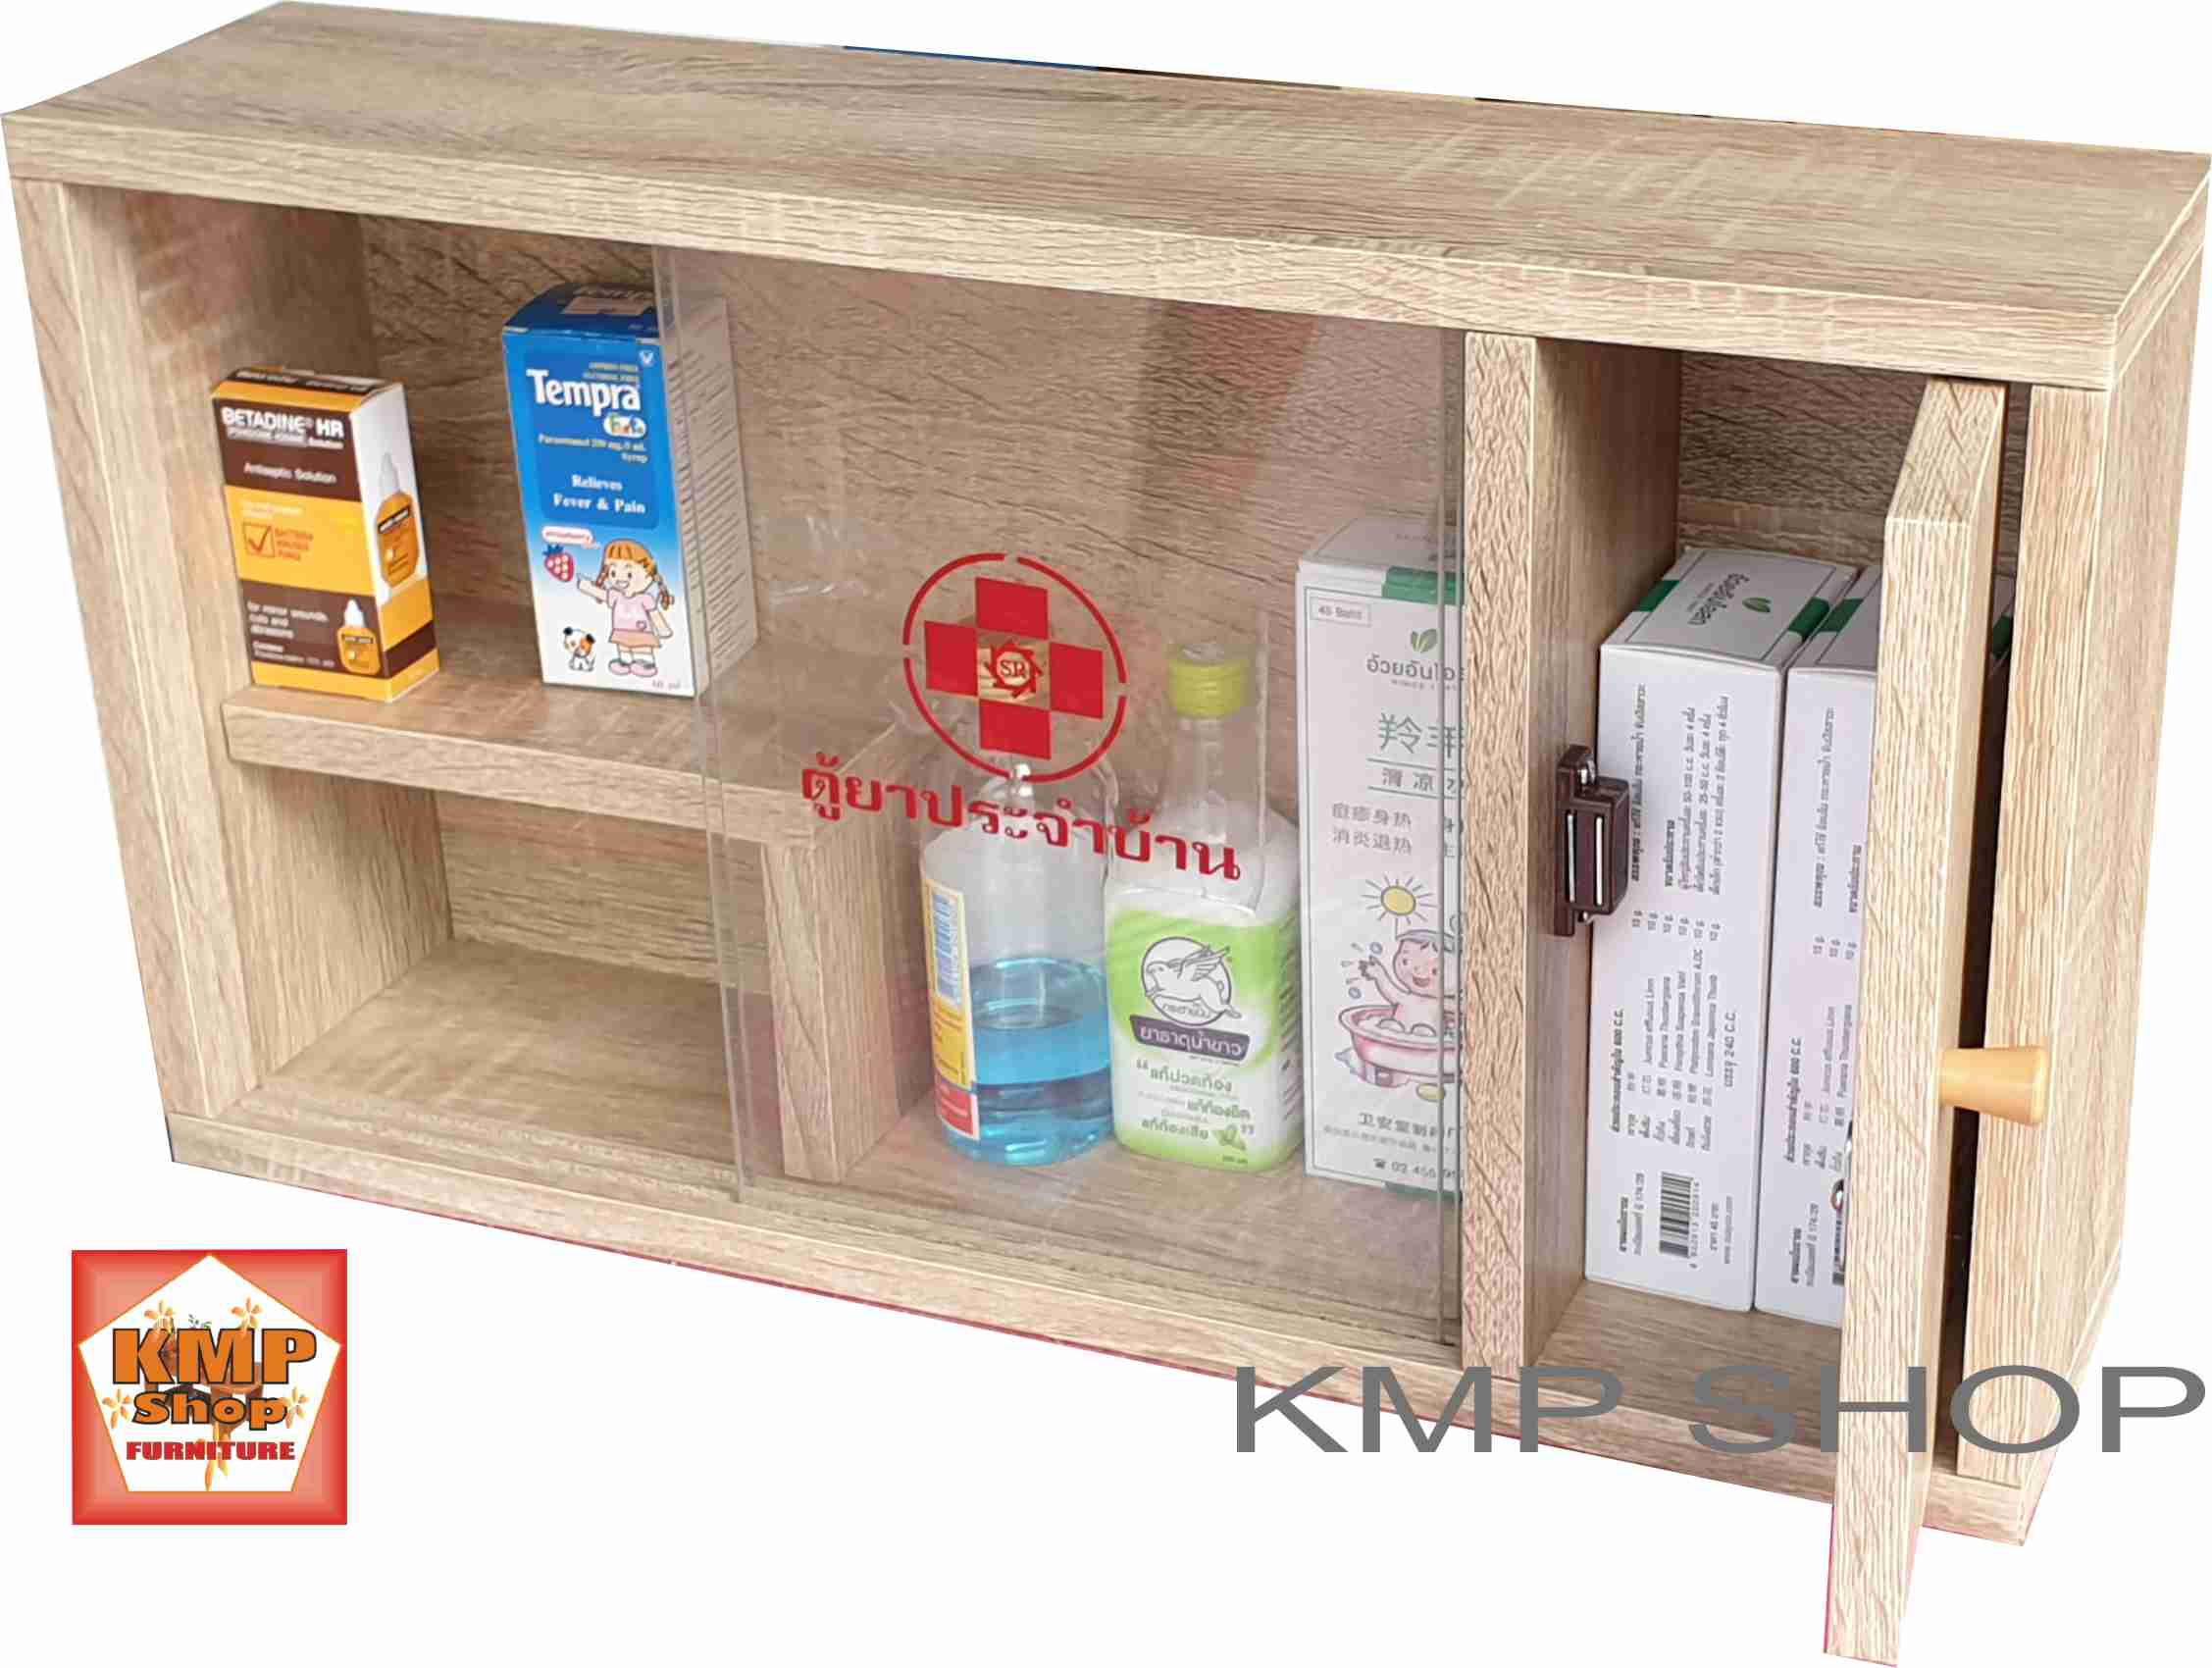 KMP Furniture   ตู้ยาสามัญประจำบ้าน  สามารถแขวนผนังได้ No.2 (สีโซลิค)